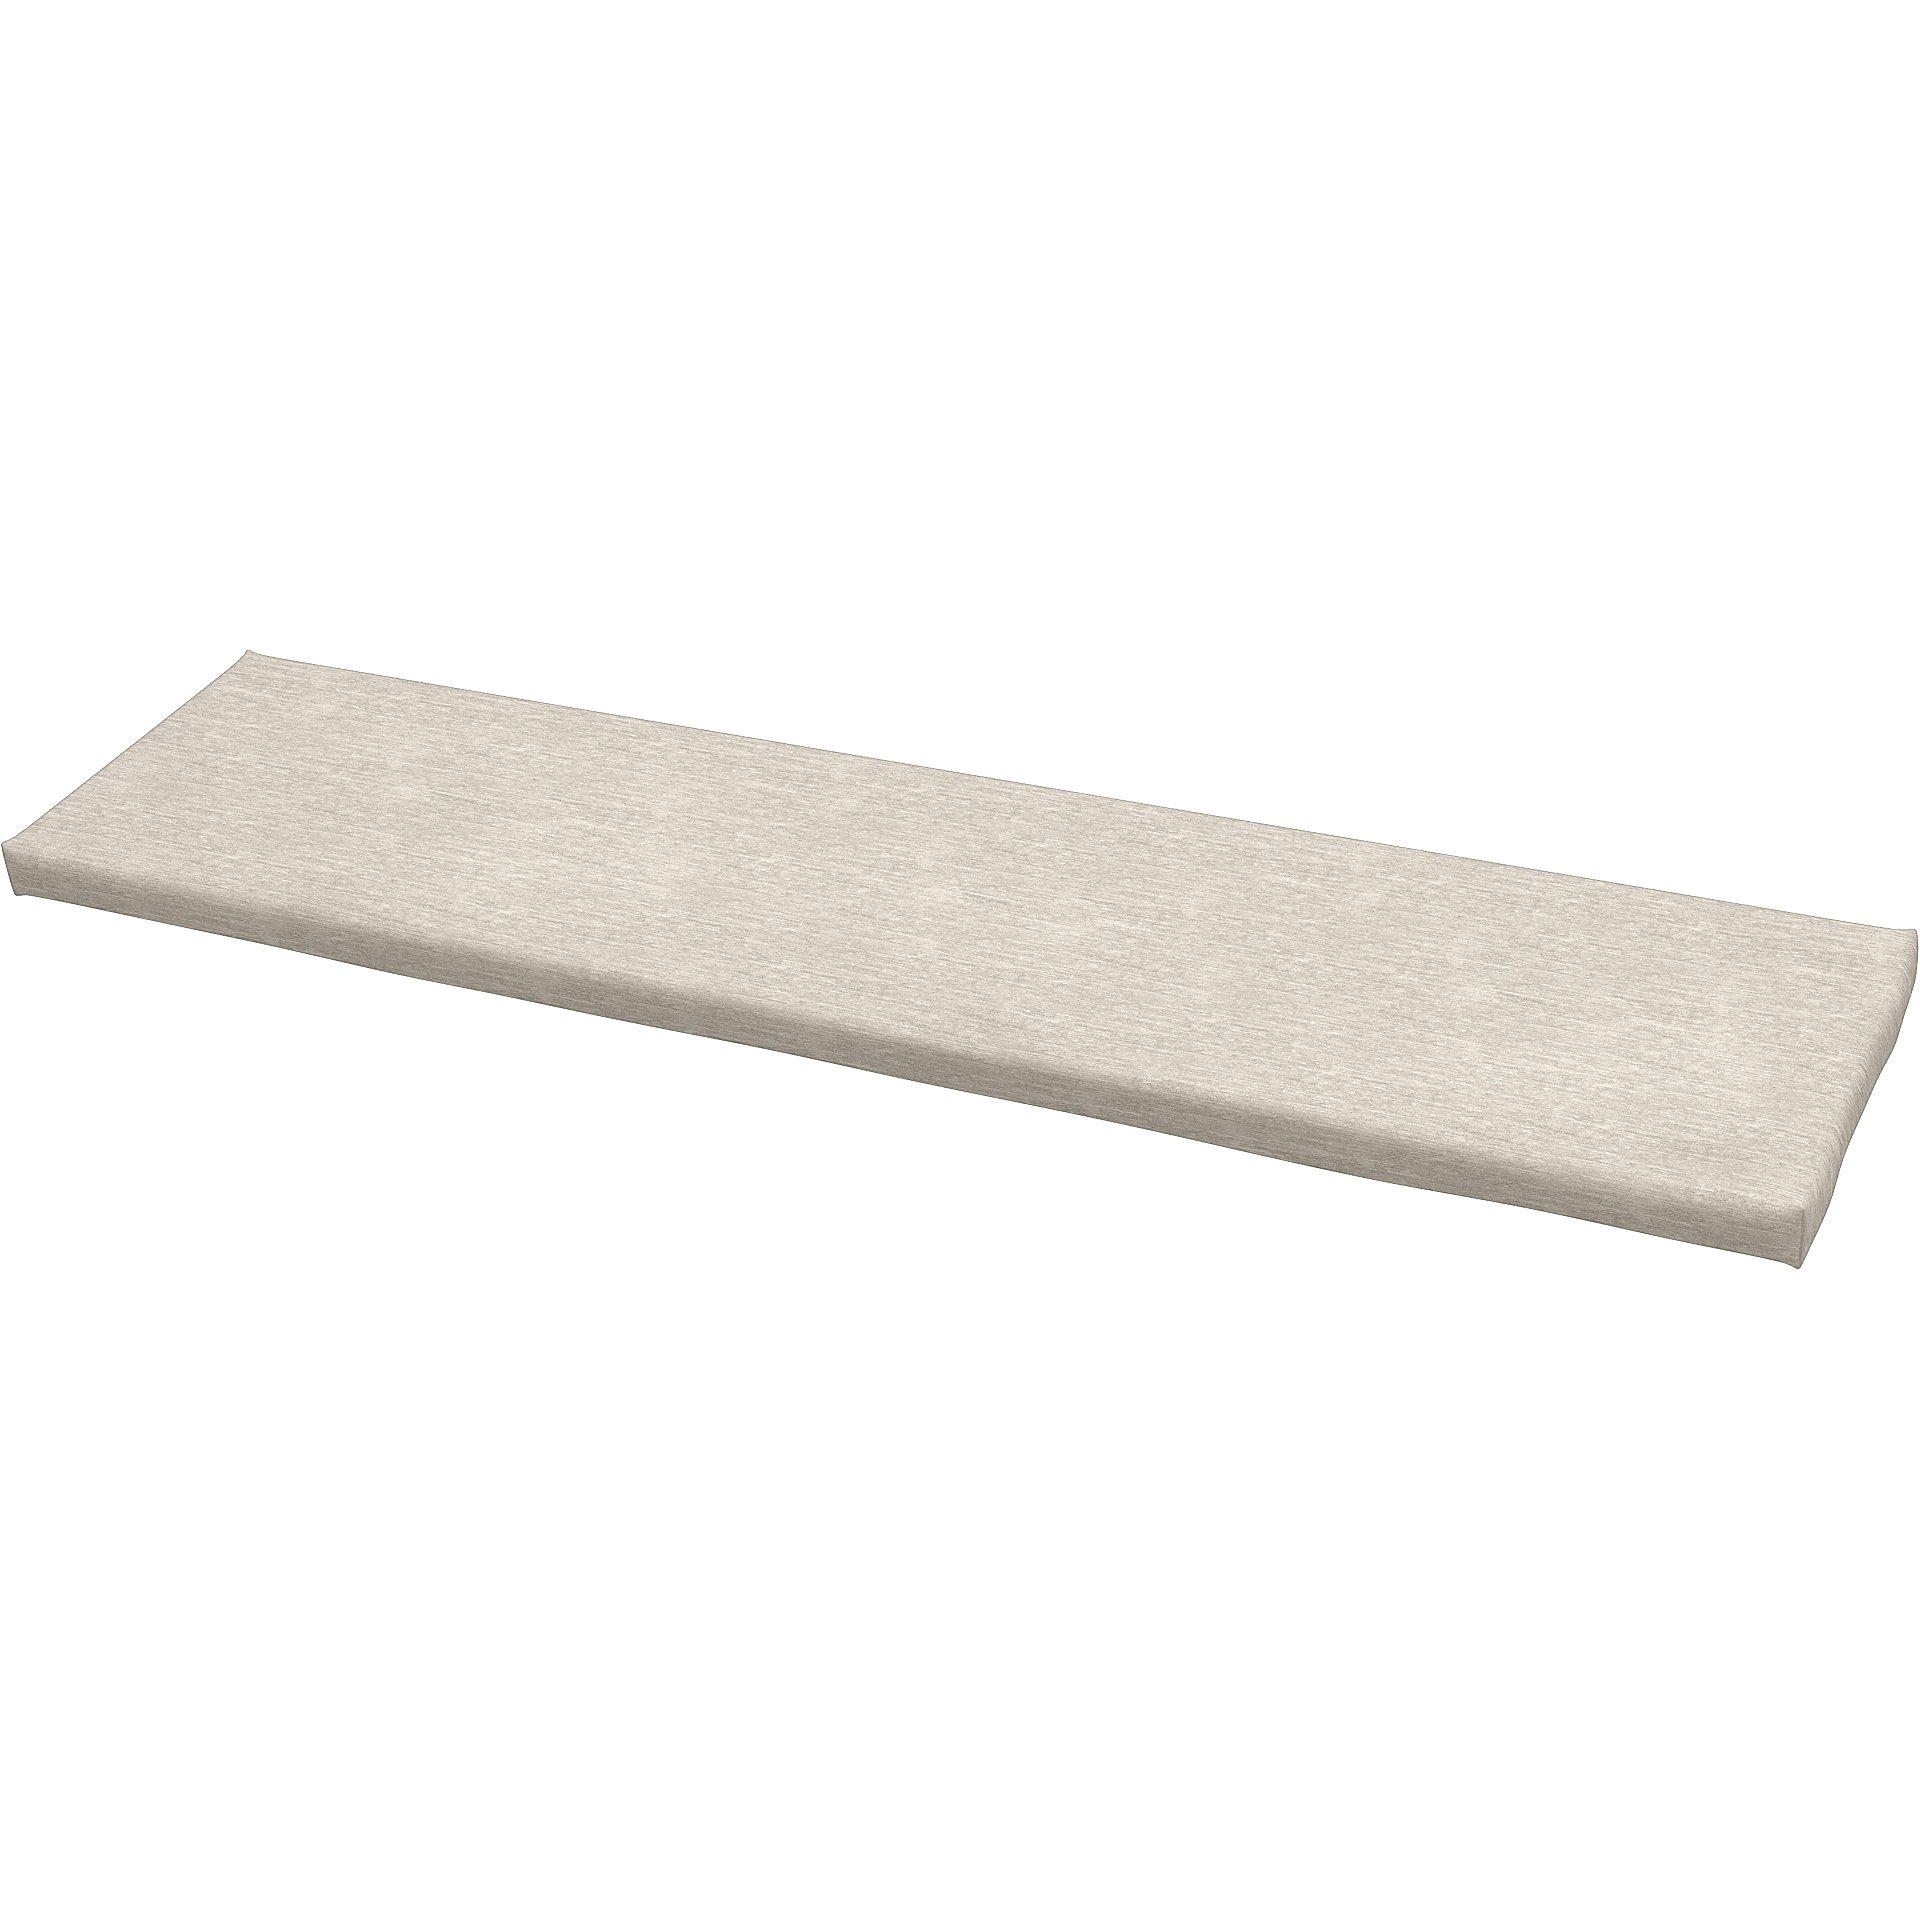 IKEA - Universal bench cushion cover 140x35x3,5 cm, Natural White, Velvet - Bemz